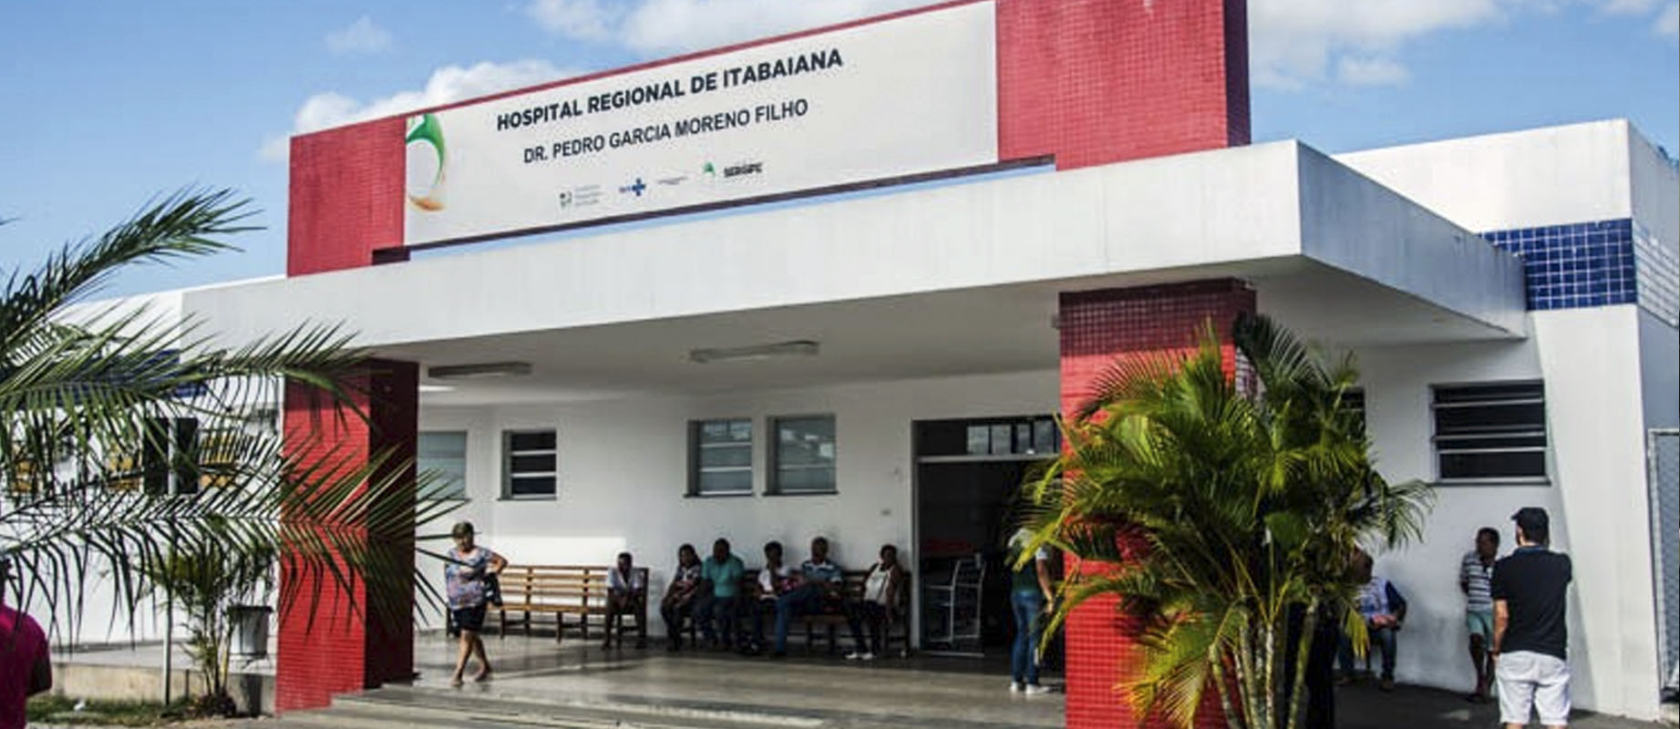 Hospital Regional de Itabaiana Dr Pedro Garcia Moreno (Sergipe)